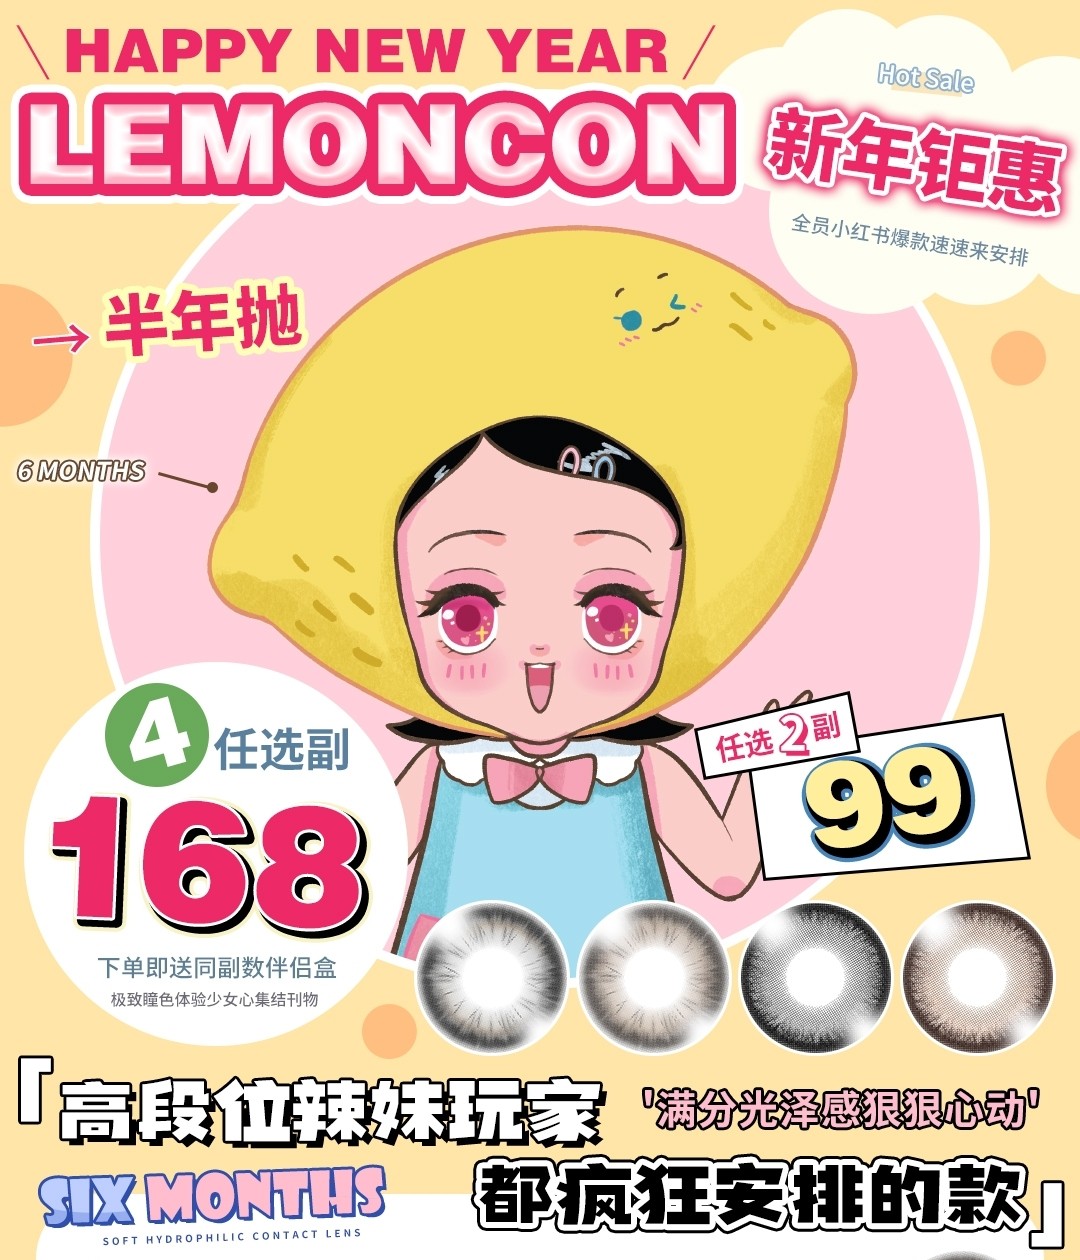 【半年抛】Lemoncon美瞳 实打实的精品贵妇瞳高端线